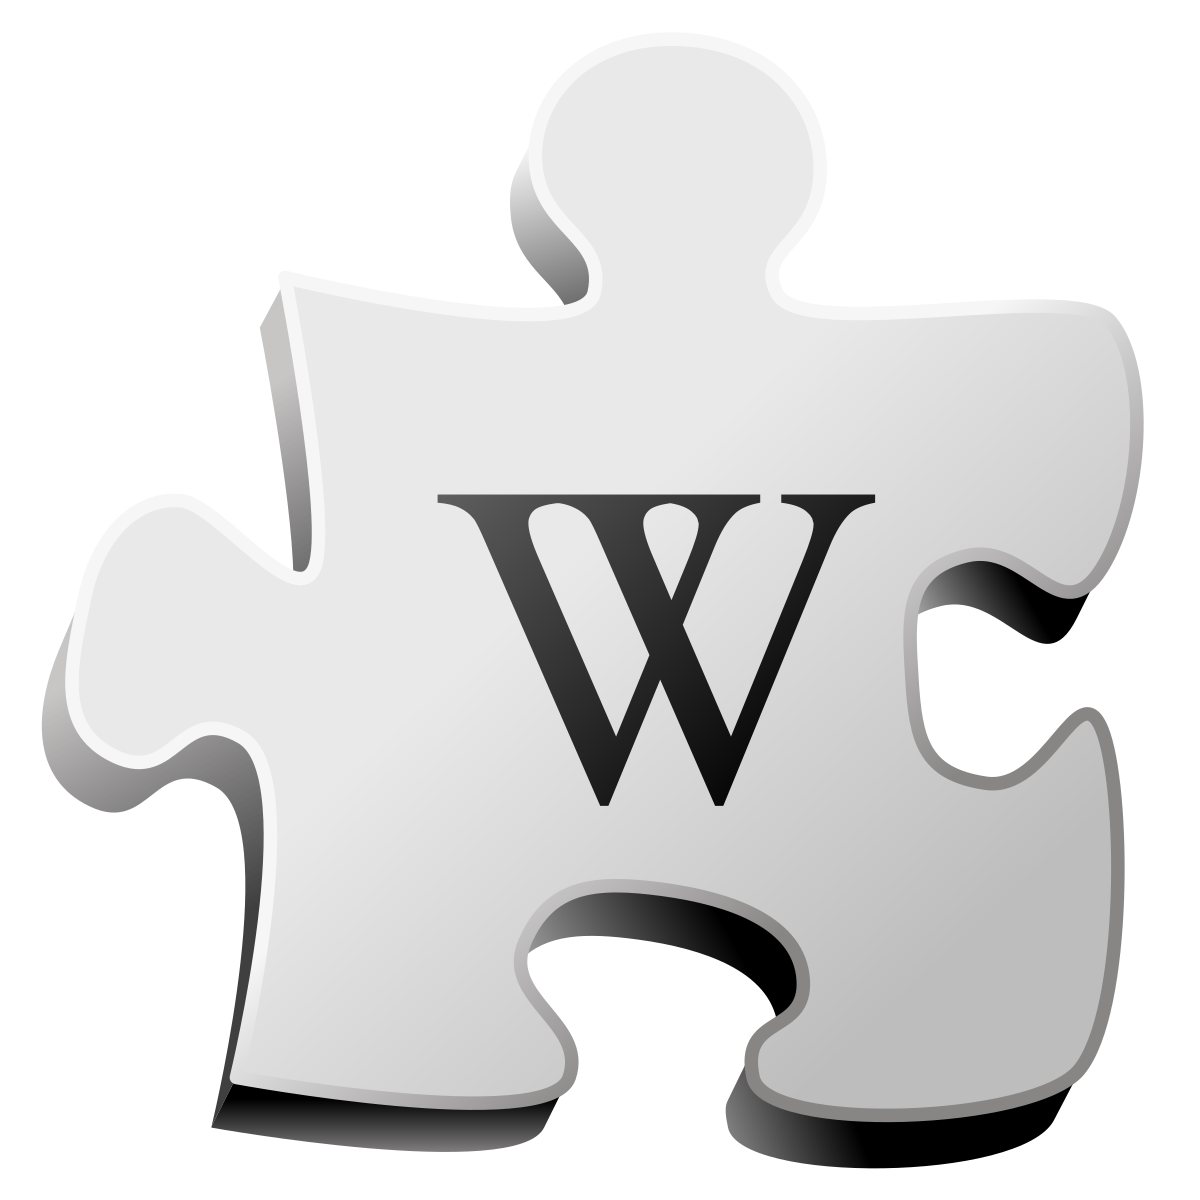 Https www wikipedia. Иконка Wiki. Википедия логотип. Символ Википедии. Значок Википедии на прозрачном фоне.